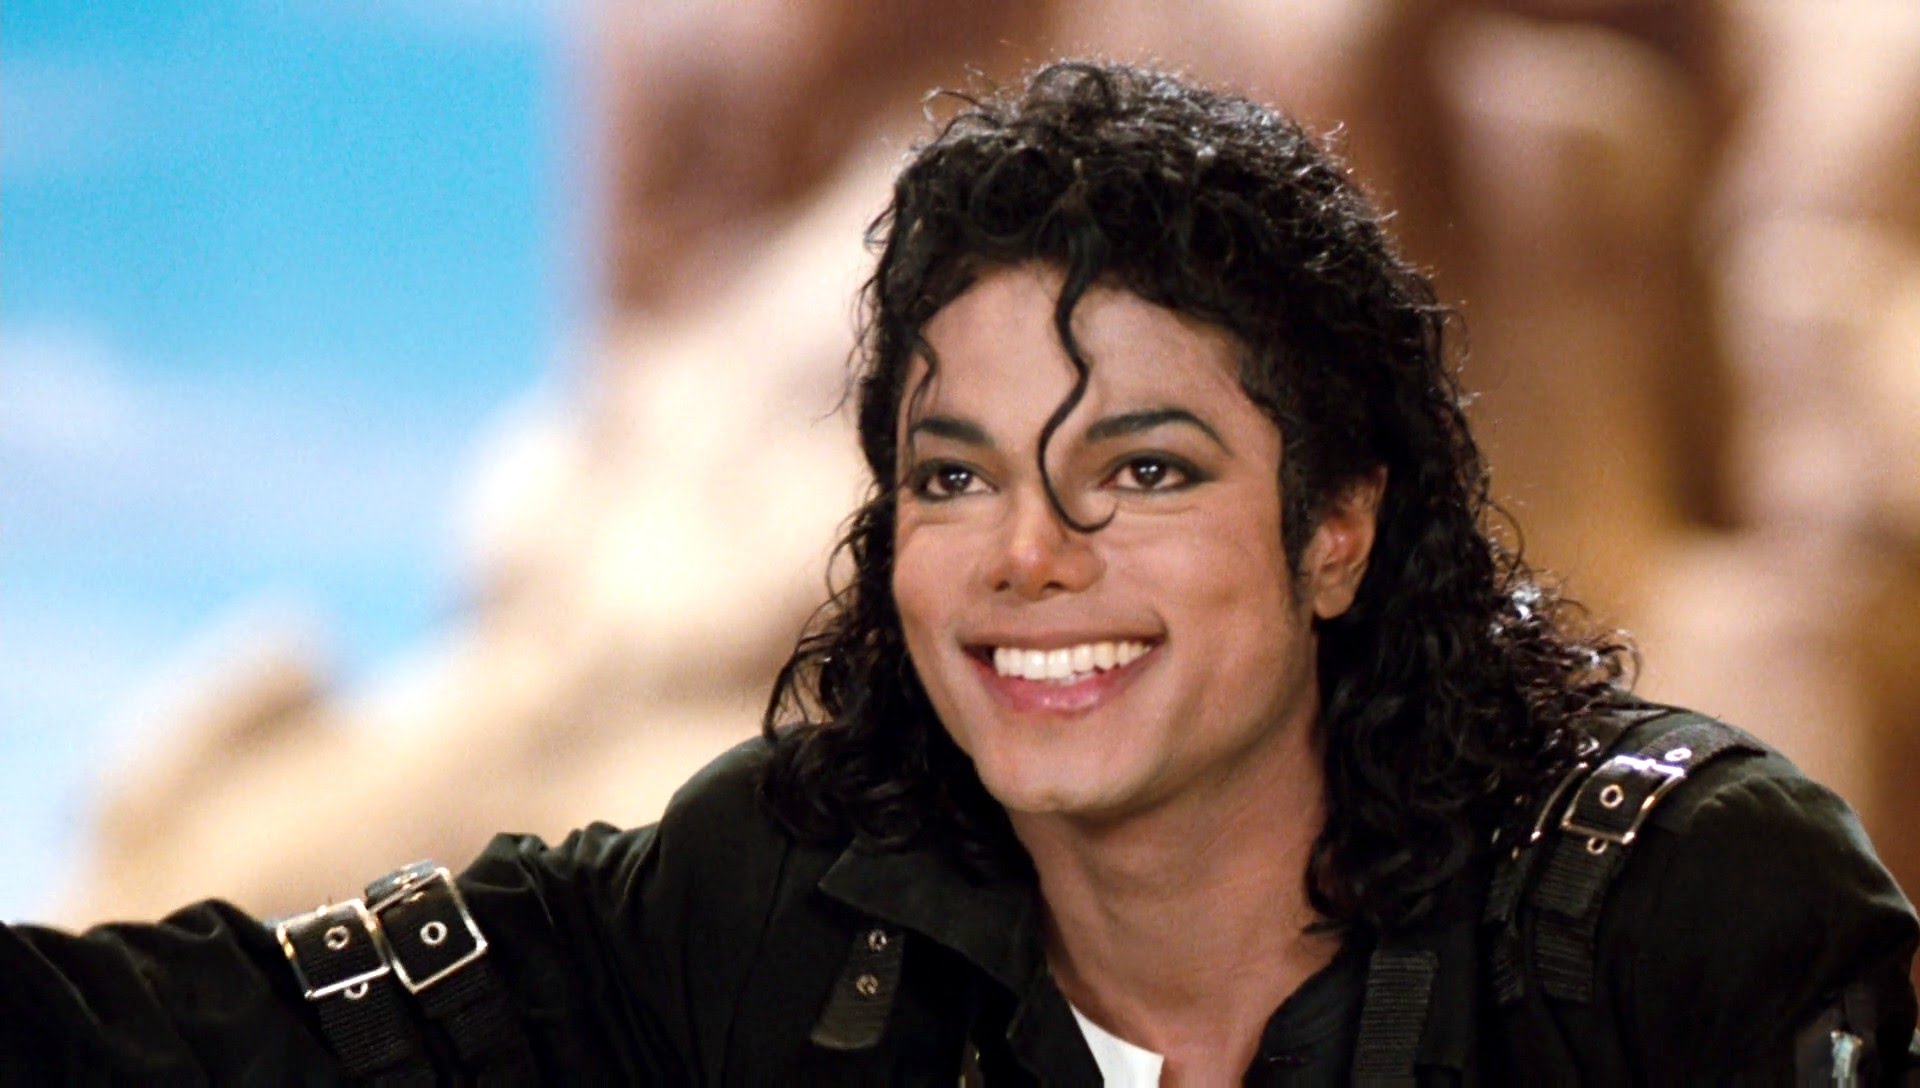  Biografia lui Michael Jackson